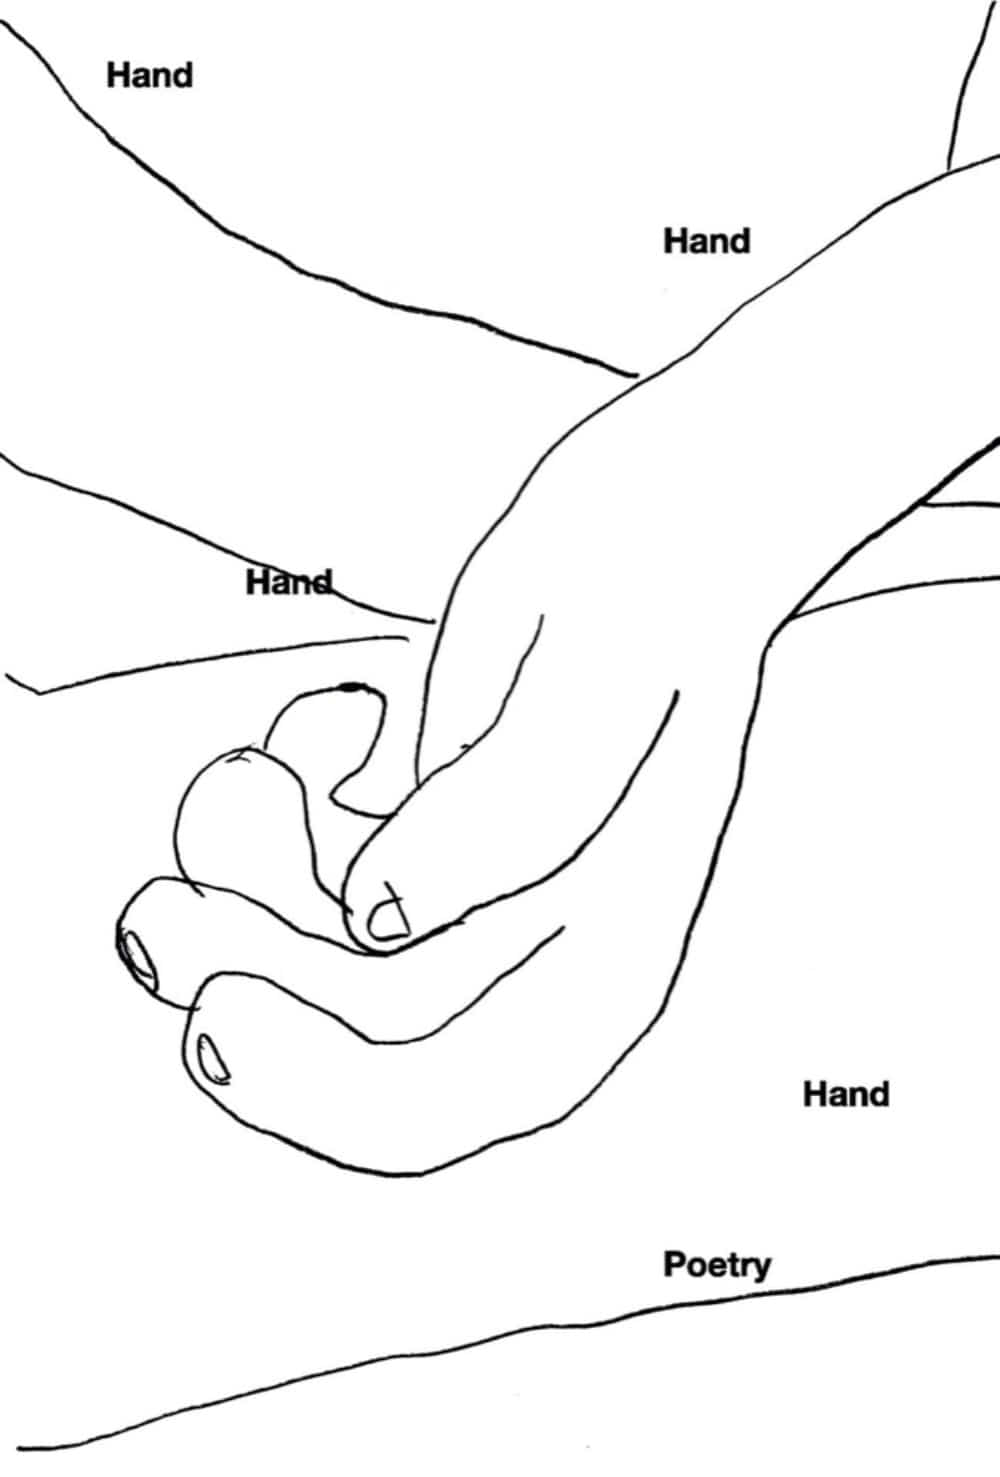 [4차 입고] Hand, Hand, Hand, Hand, Poetry · NOWWE